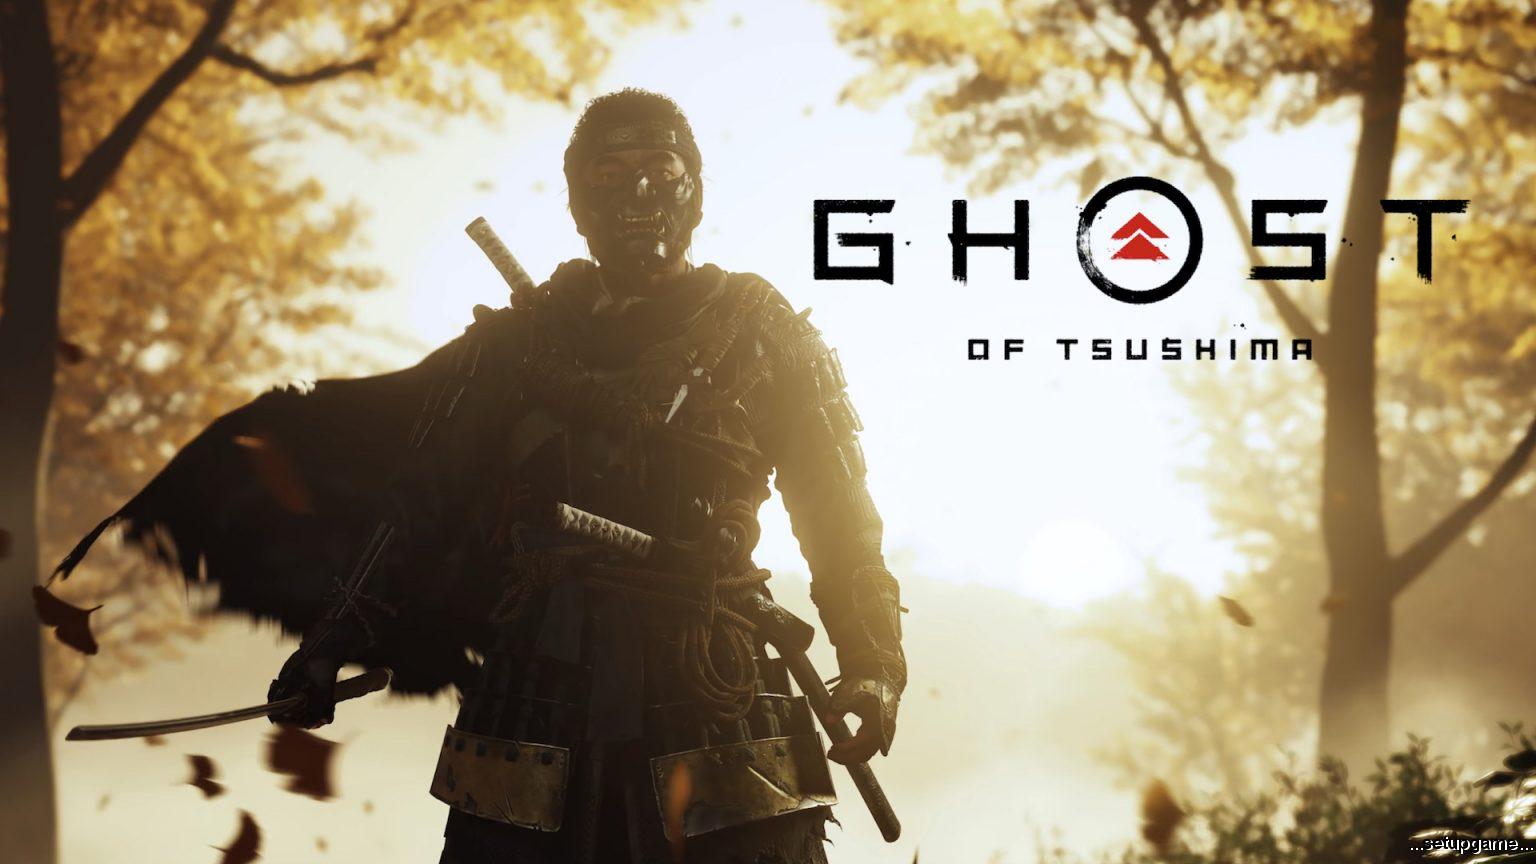 فروش دیجیتالی بازی Ghost Of Tsushima در جولای به ۲ میلیون نسخه رسید